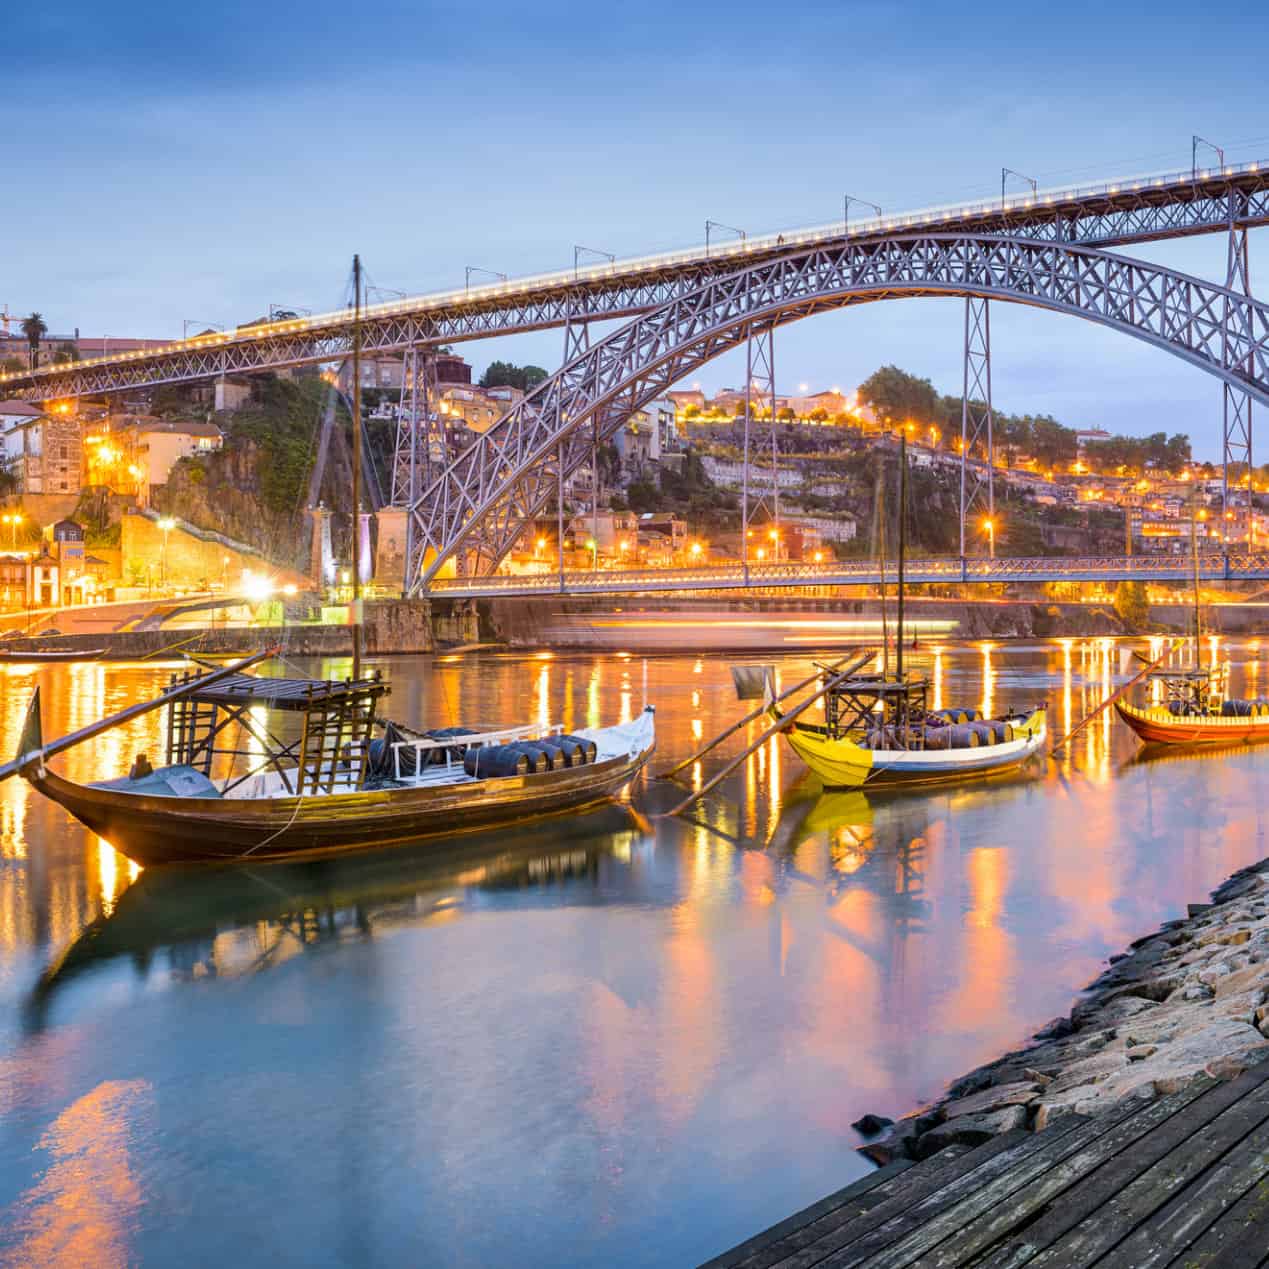 Beautiful shot of Douro River